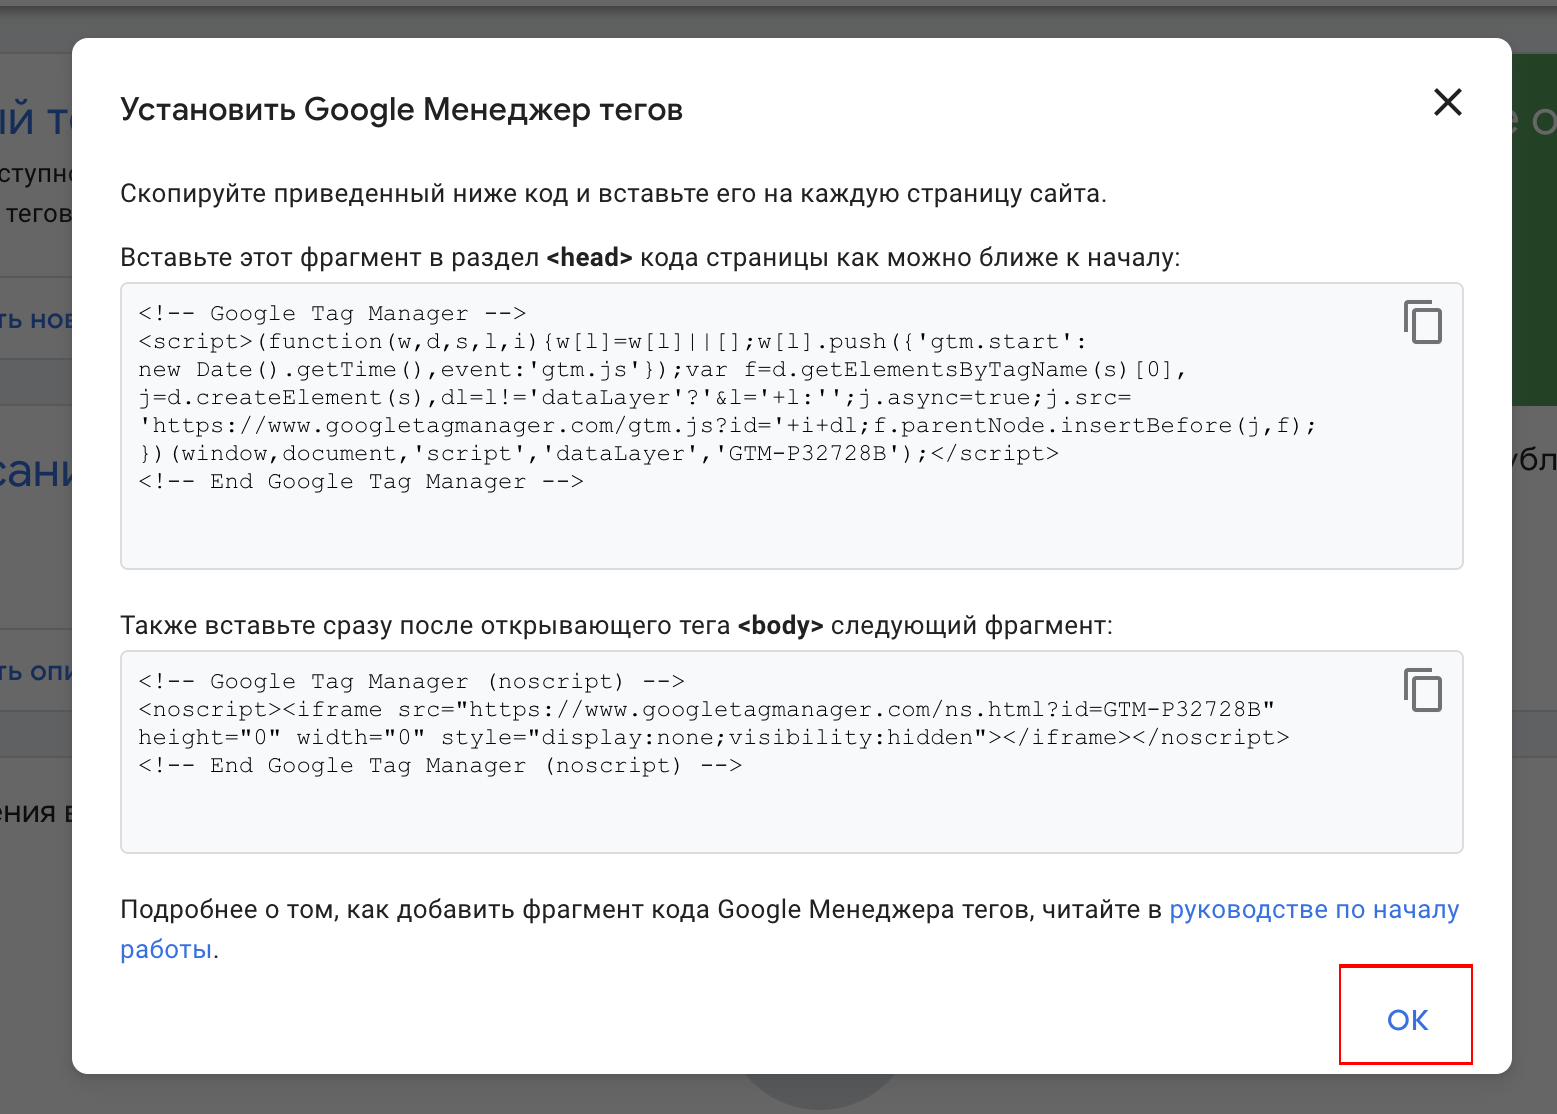 Как подключить к странице события Google Tag Manager?